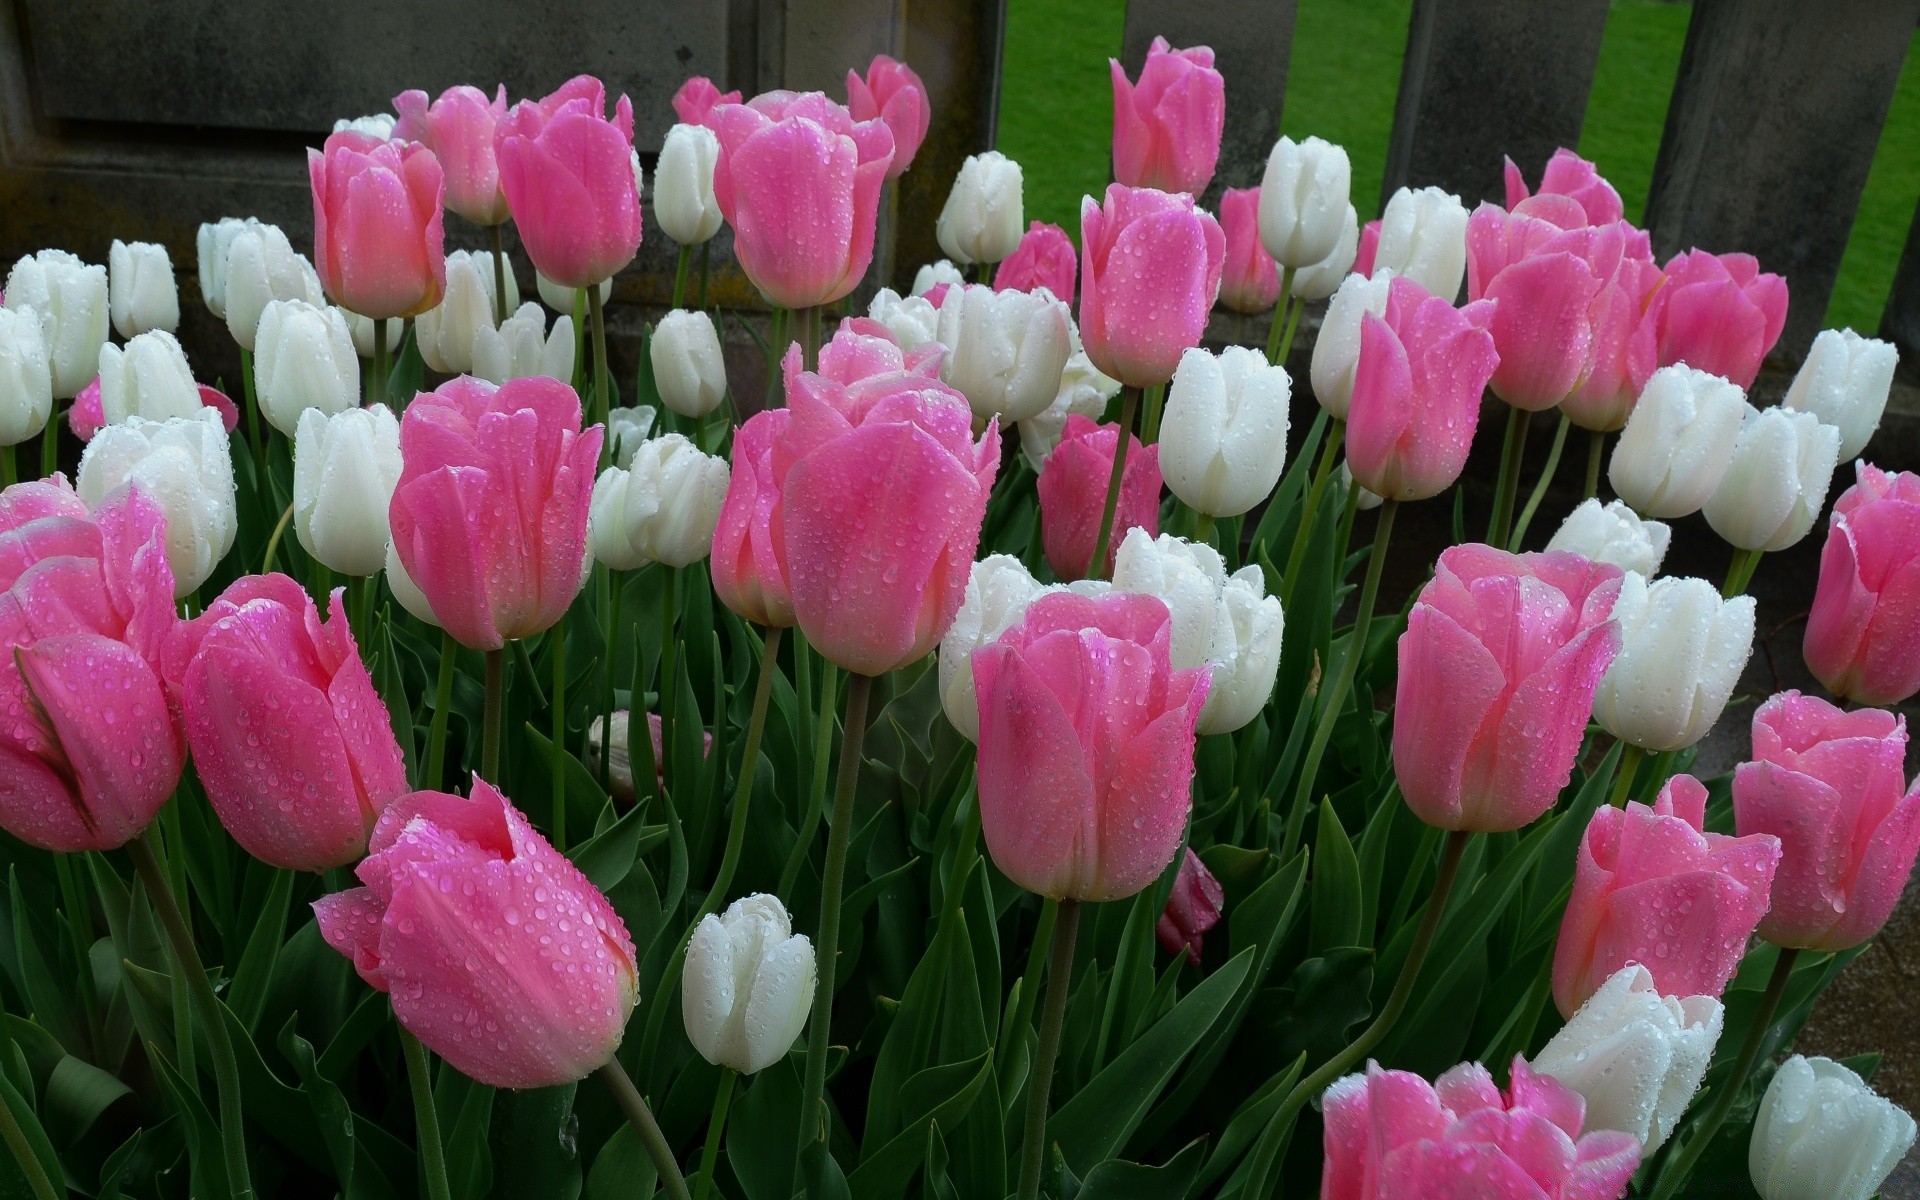 весна тюльпан цветок сад природа букет лист цветочные флора лепесток лето блюминг цвет пасха парк поле кластер яркий